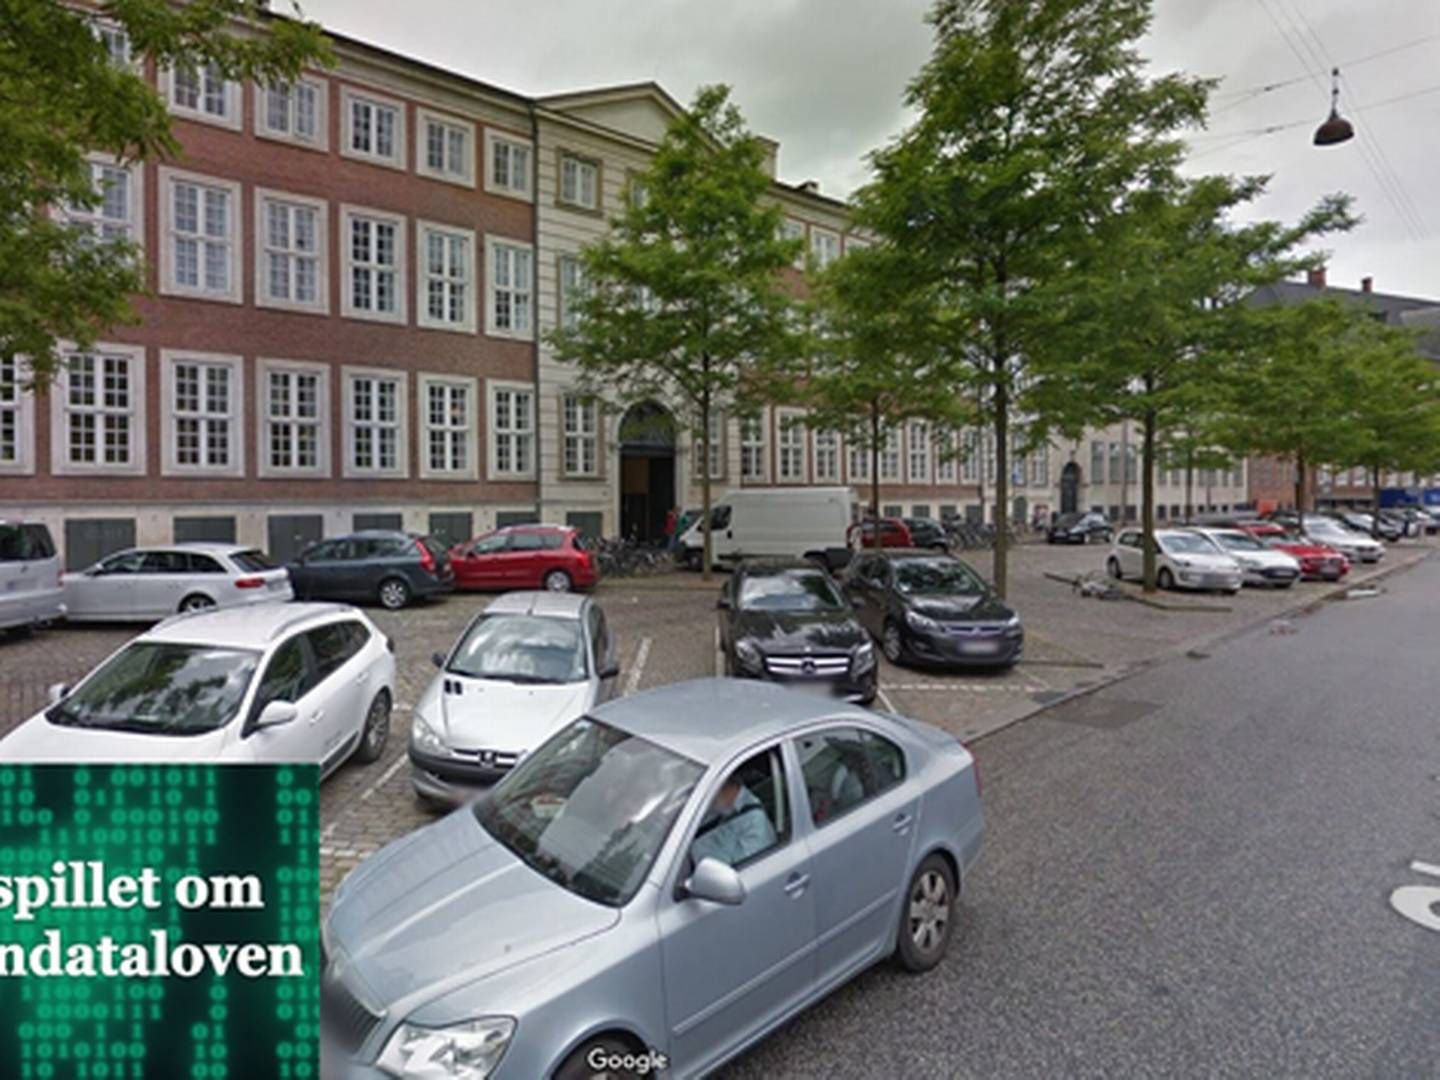 Justitsministeriet holder til på Slotsholmen i København. | Foto: Google Maps